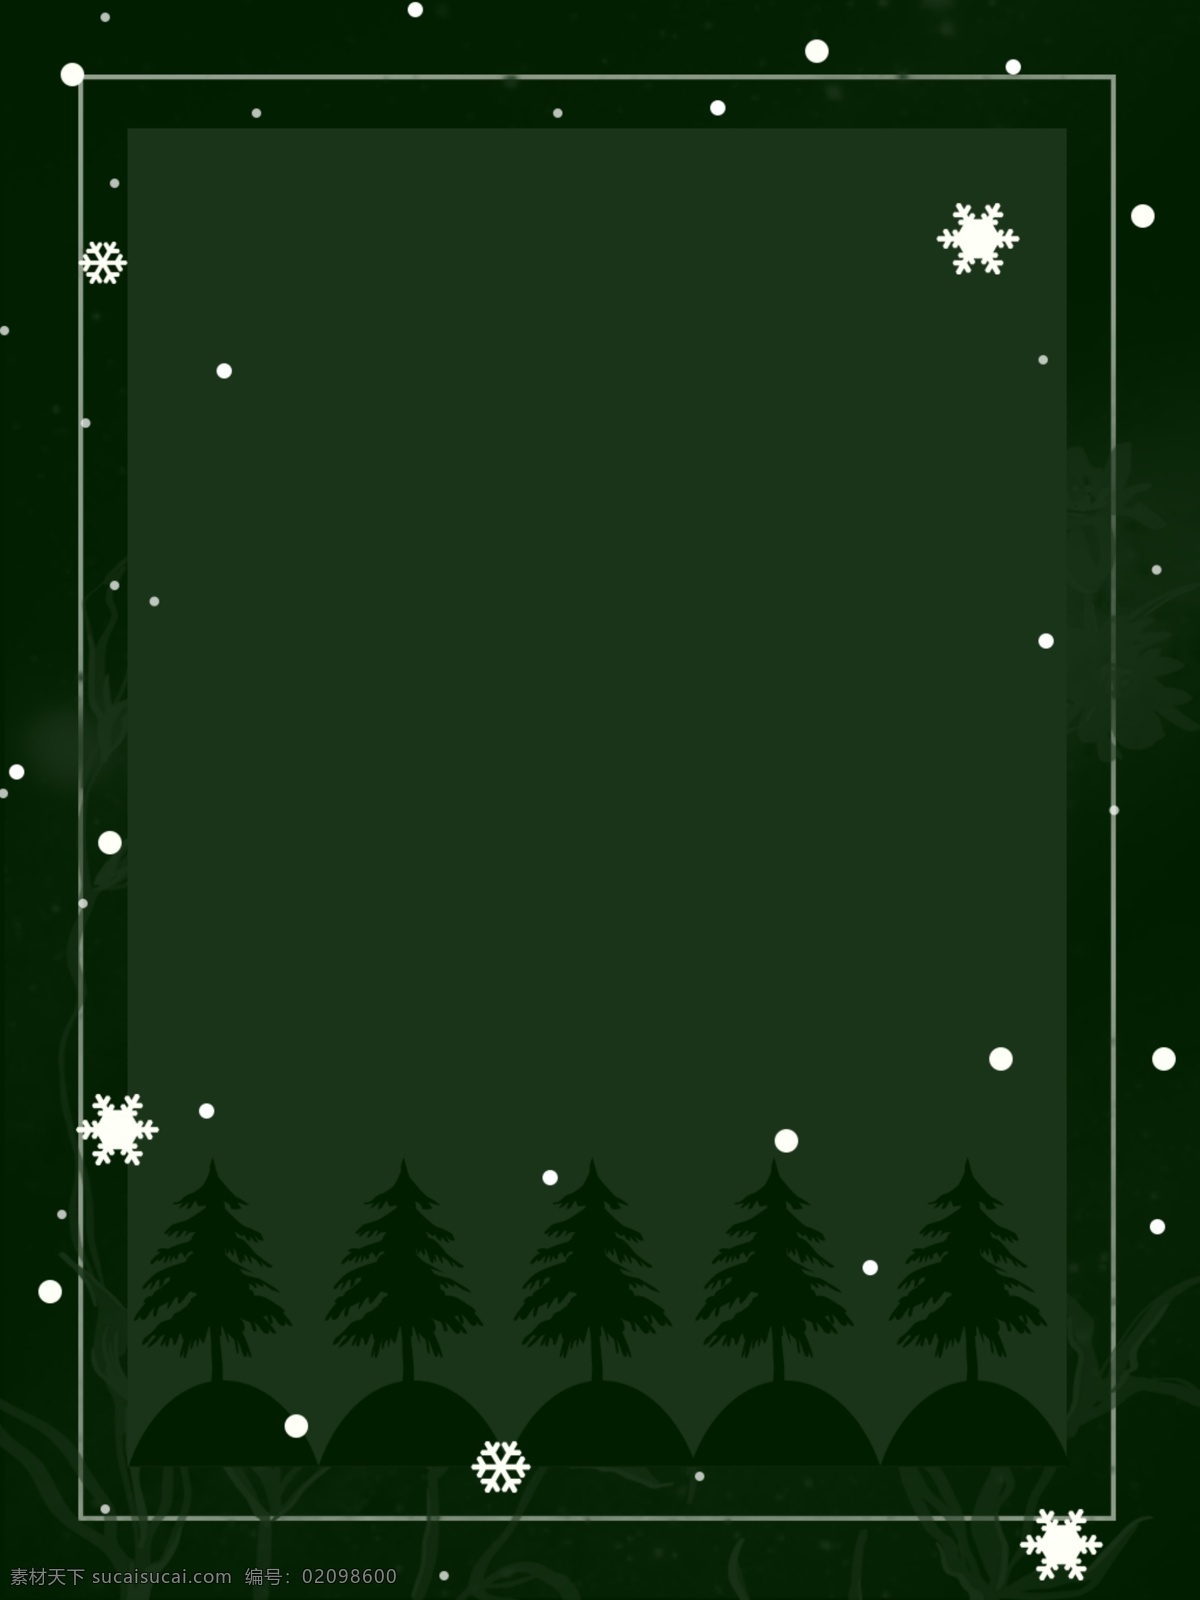 简约 圣诞 雪景 树 背景 圣诞背景 圣诞树背景 圣诞雪景背景 绿色背景 纯色背景 简约圣诞